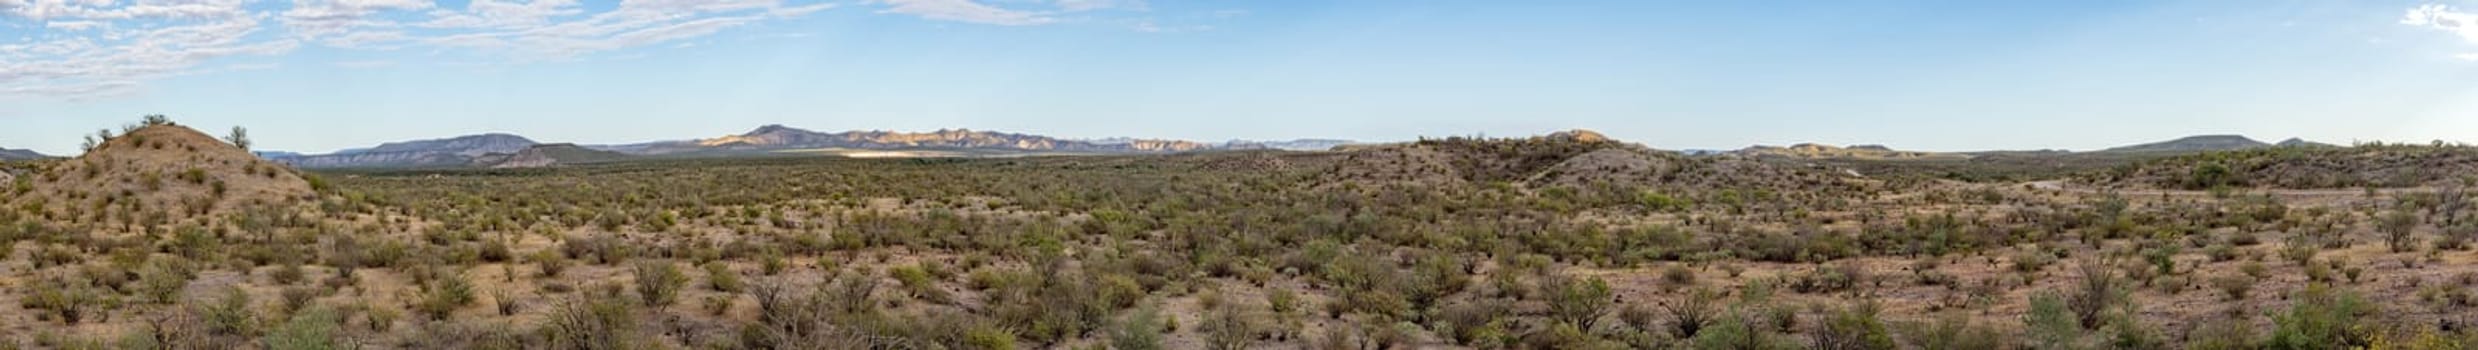 Baja California desert and ocean landscape view panorama